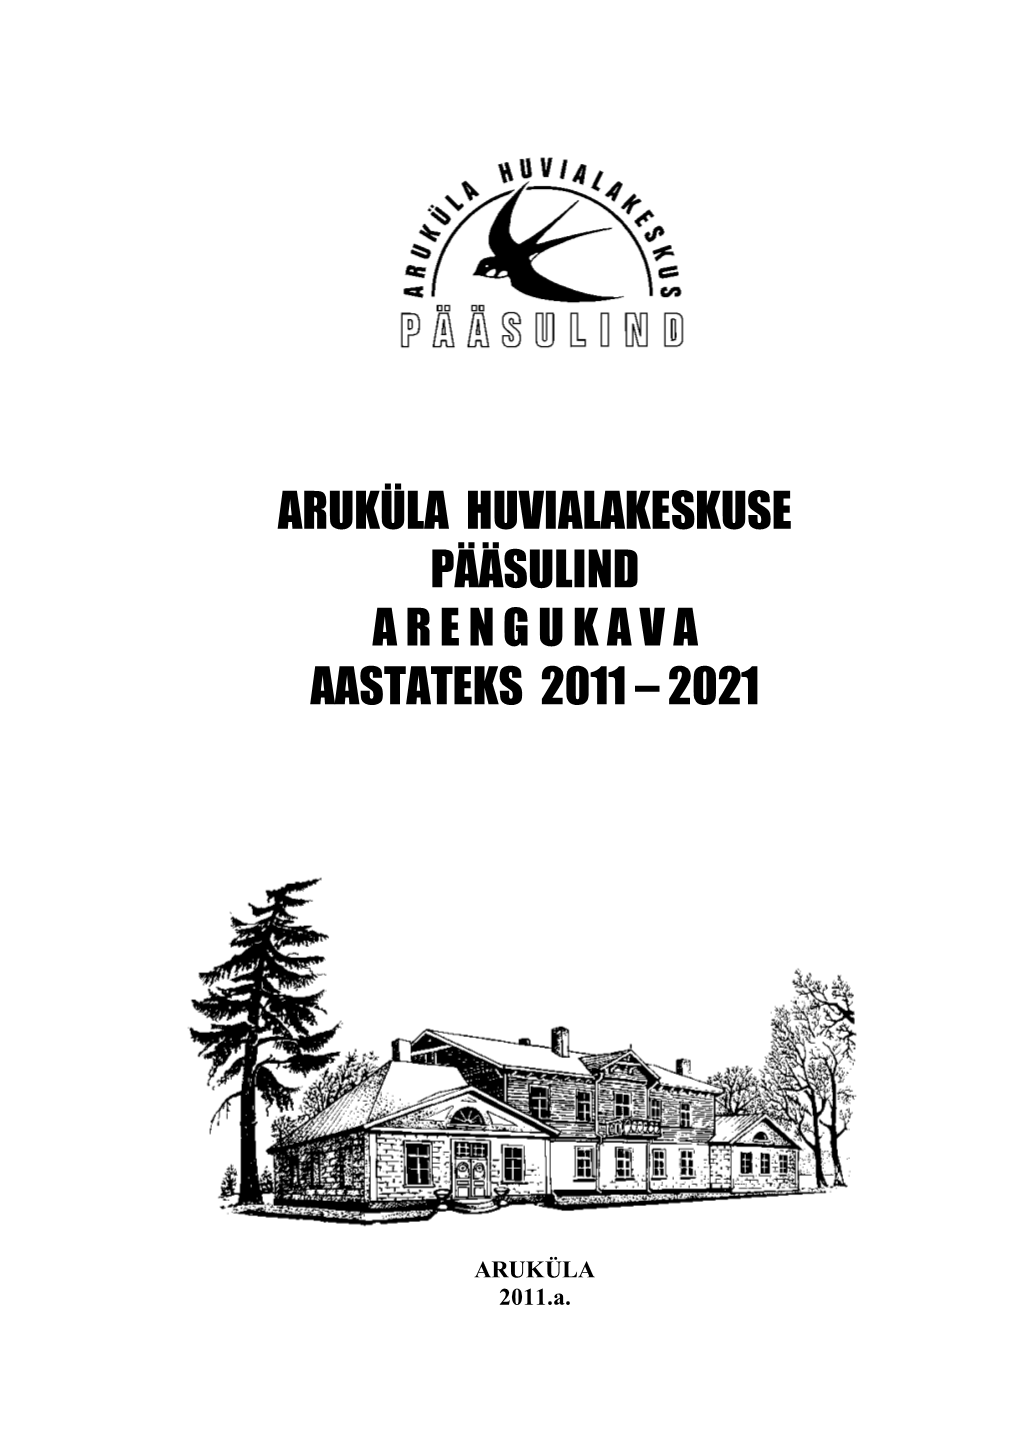 Aruküla Huvialakeskuse Pääsulind Arengukava Aastateks 2011 – 2021